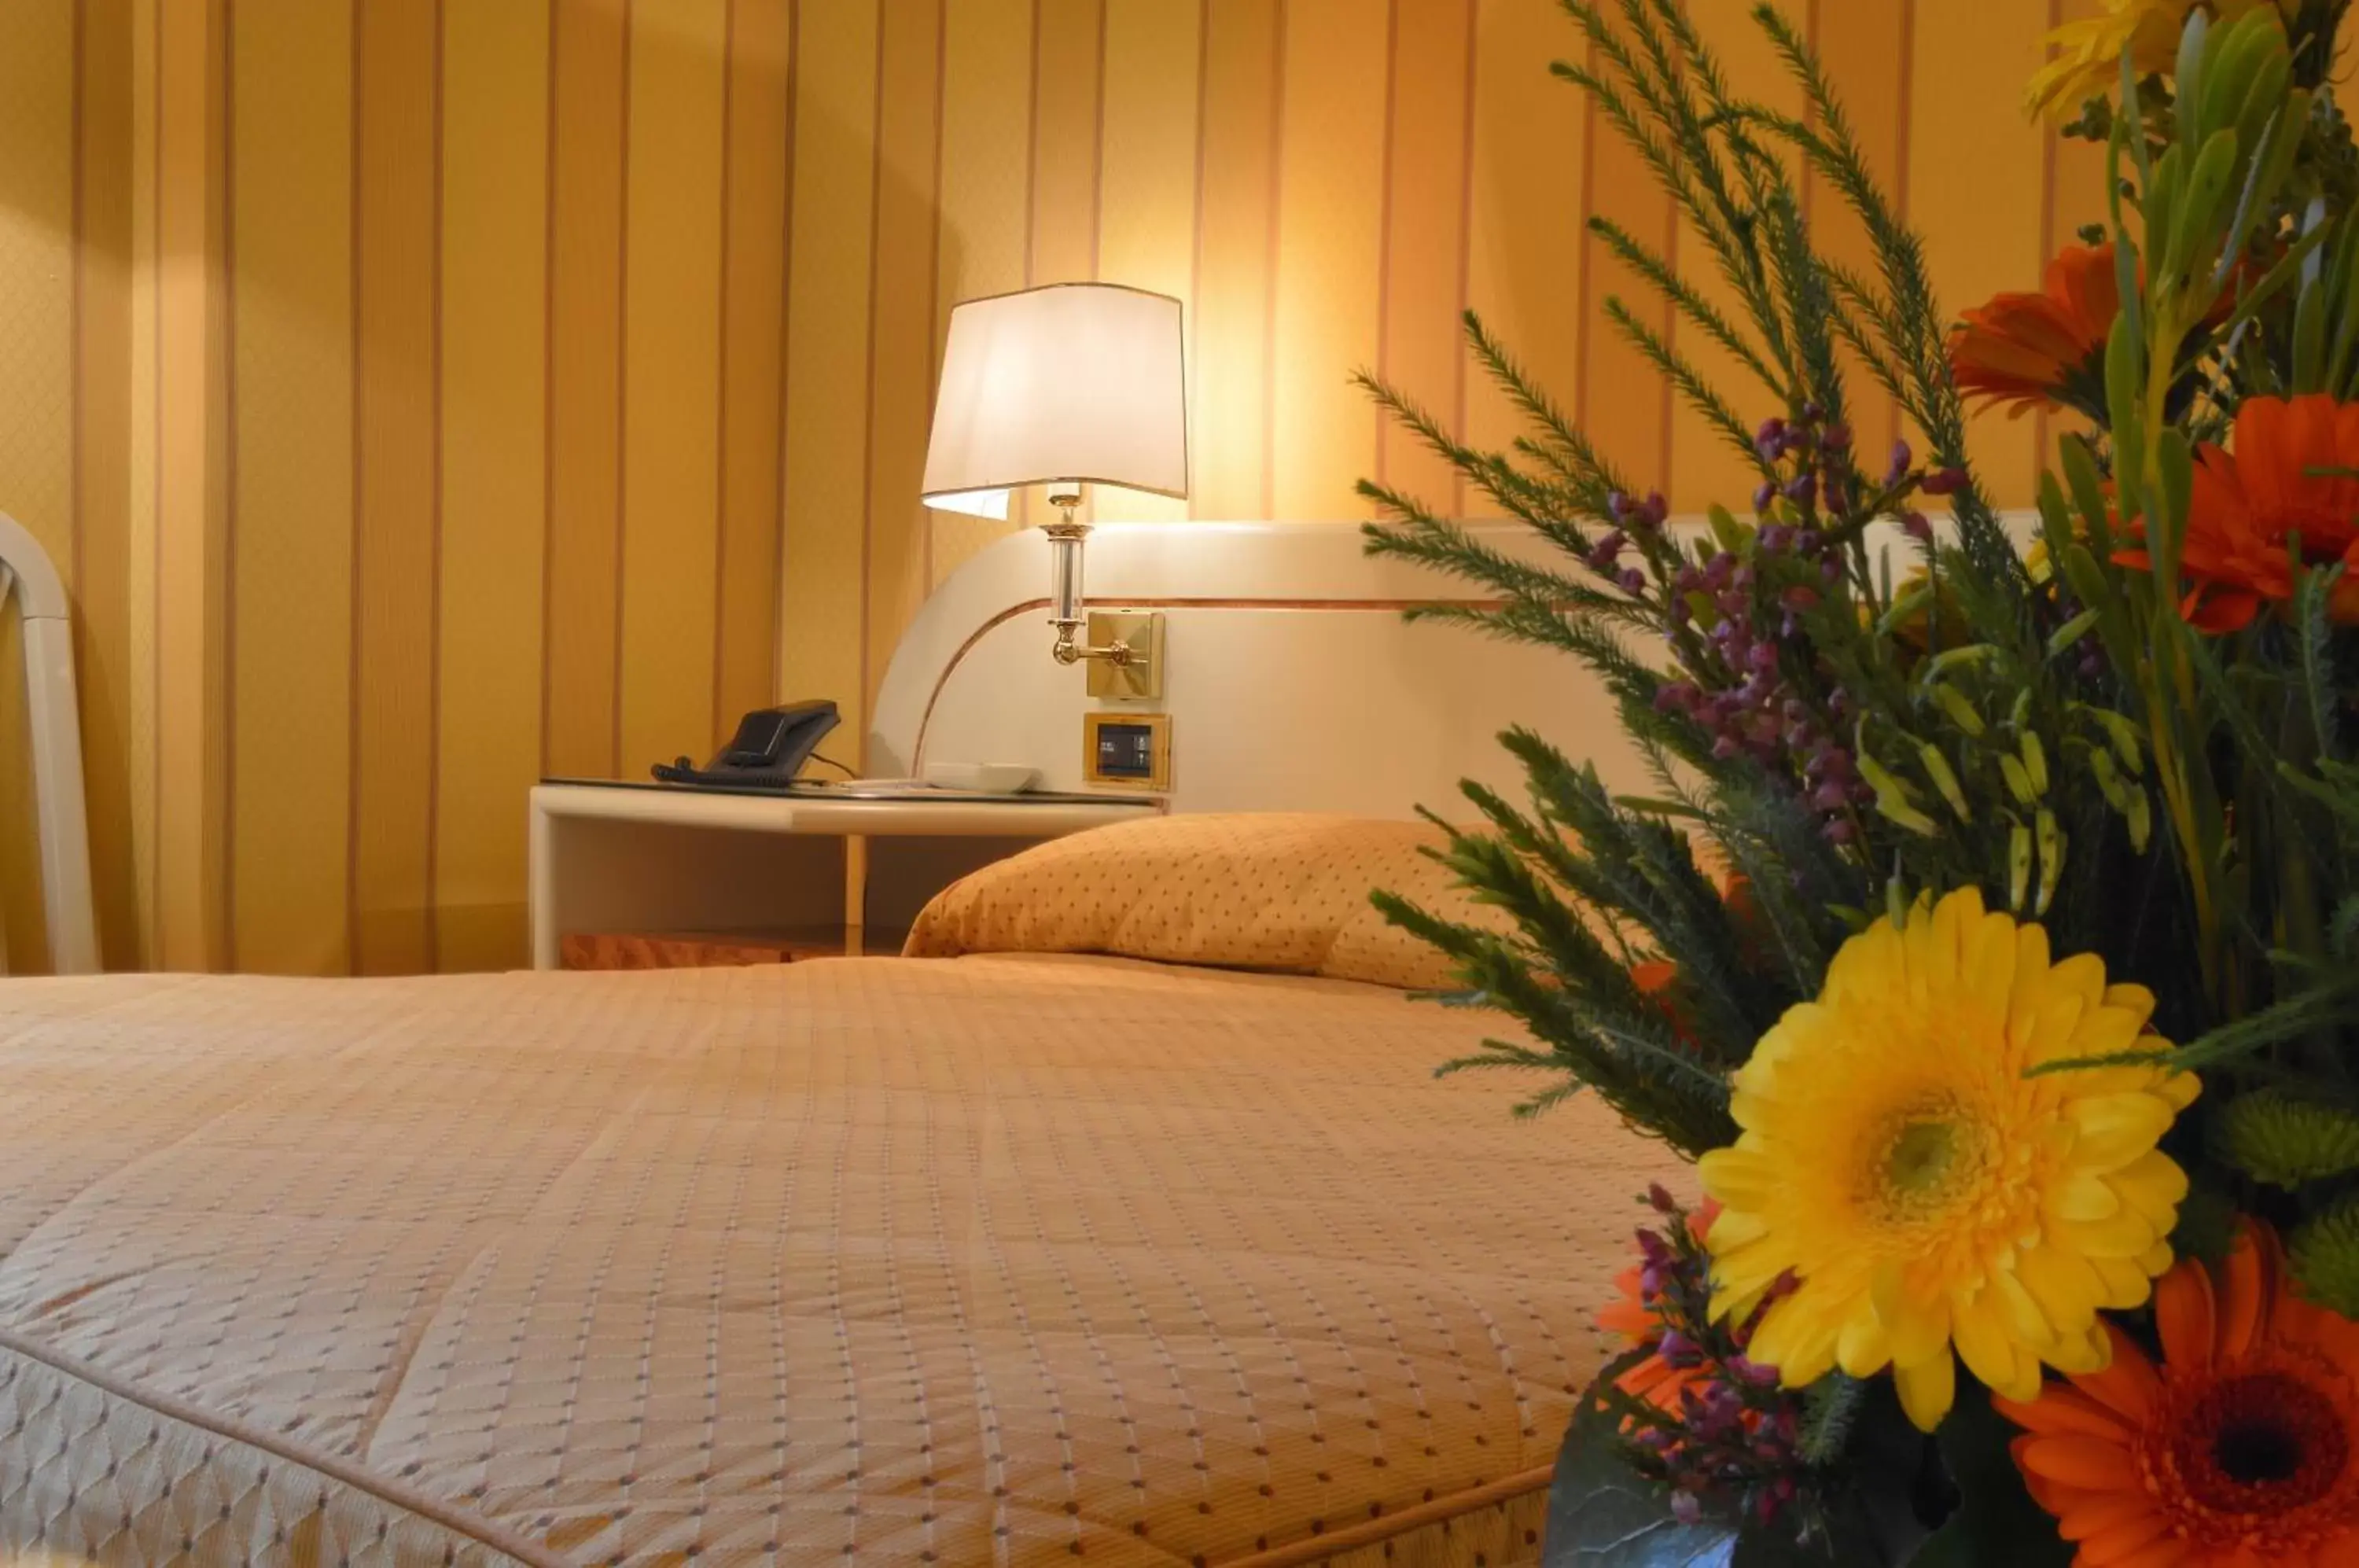 Photo of the whole room, Bed in Grand Hotel Vesuvio